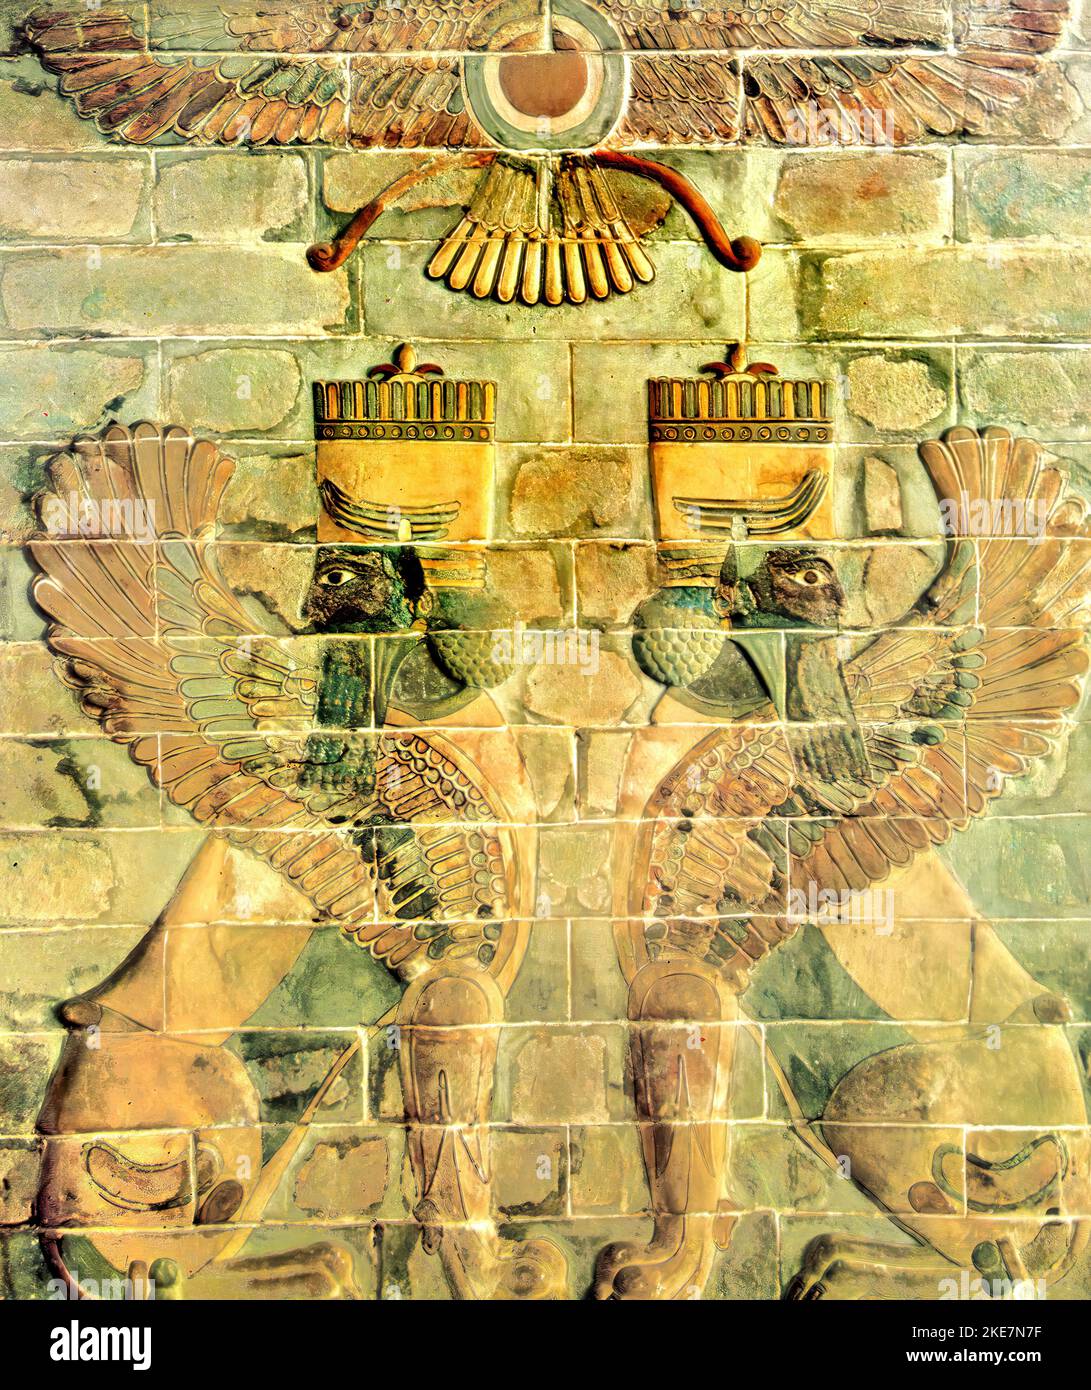 Un antico pannello di mattoni smaltati di Susa, in Iran, presso il museo archeologico di Teheran, con leoni alati e simbolo divino in alto al centro Foto Stock